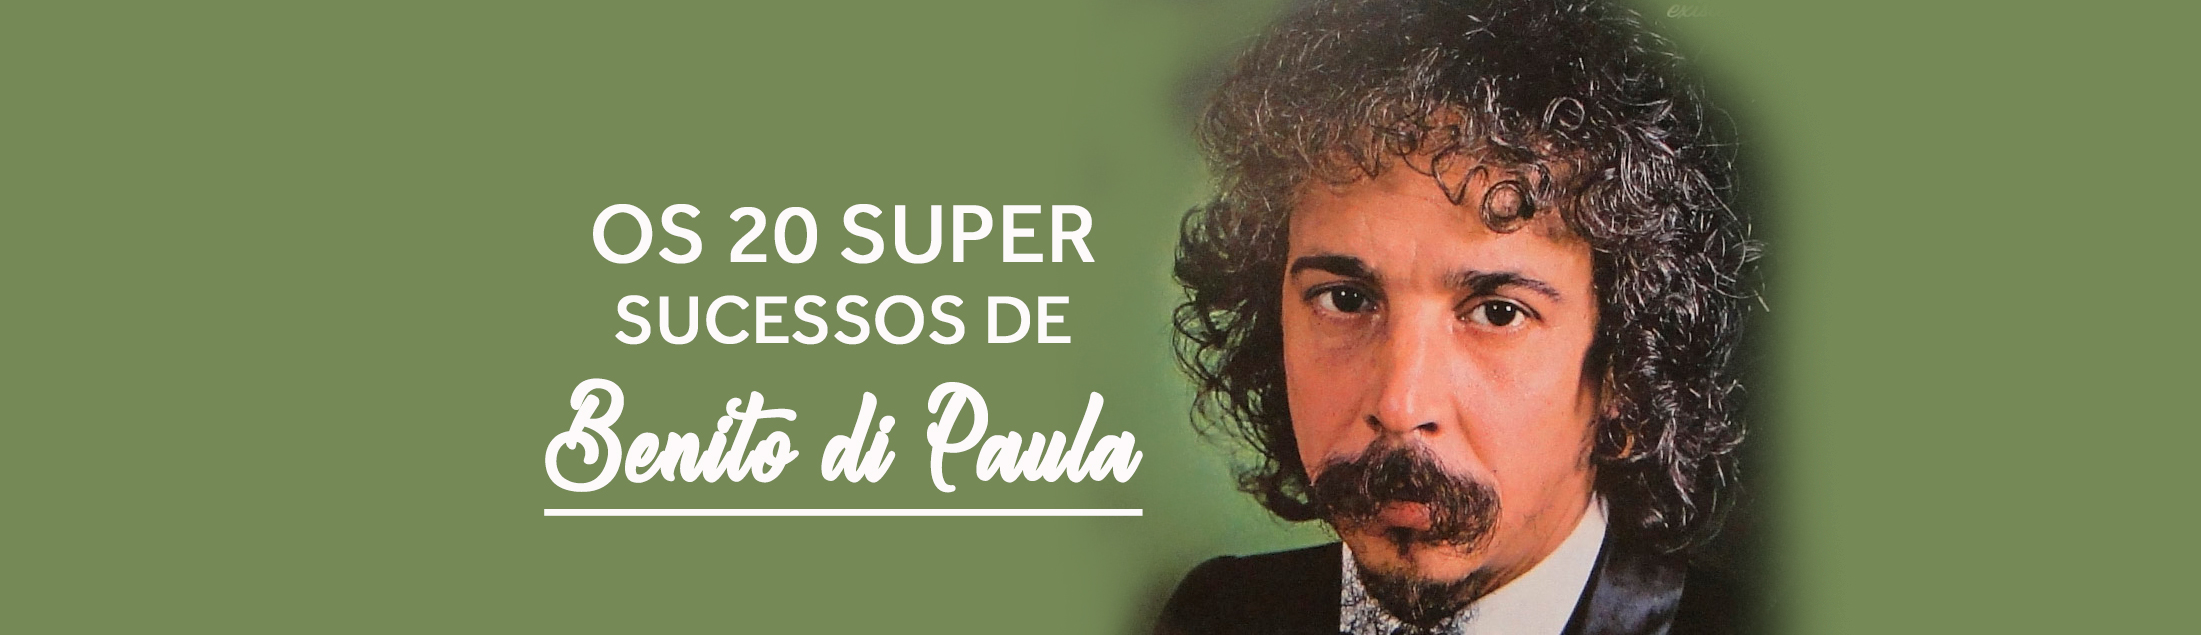 Os 20 Super Sucessos de Benito di Paula: tudo está no seu lugar na memória musical brasileira